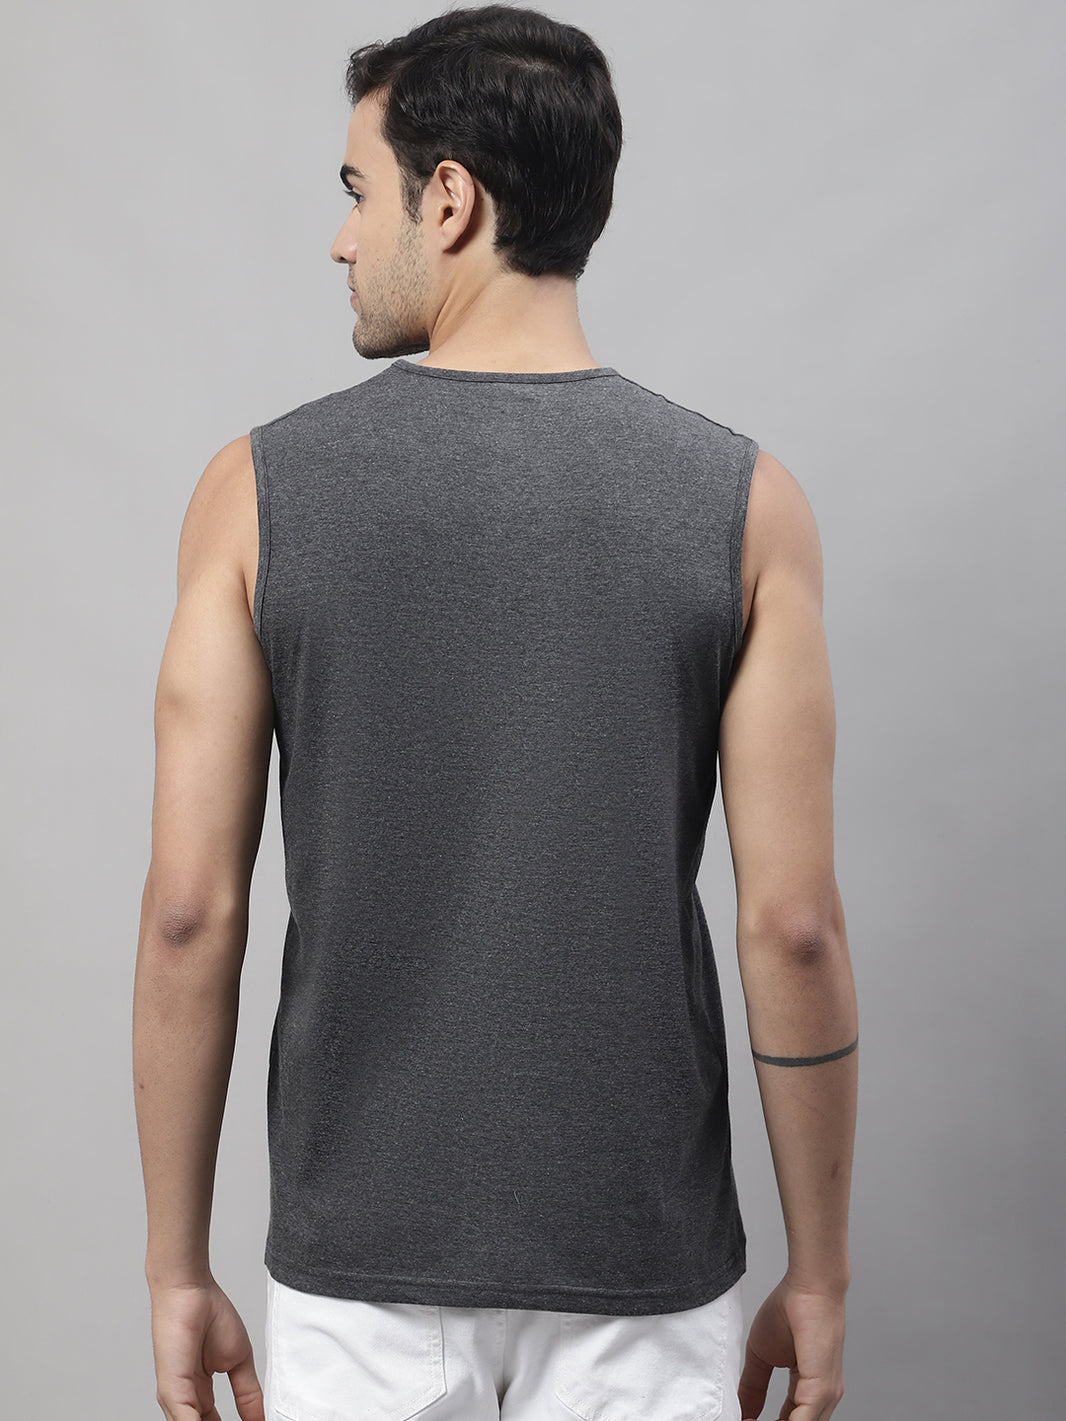 Vimal Jonney Regular Fit Cotton Solid Anthracite Gym Vest for Men